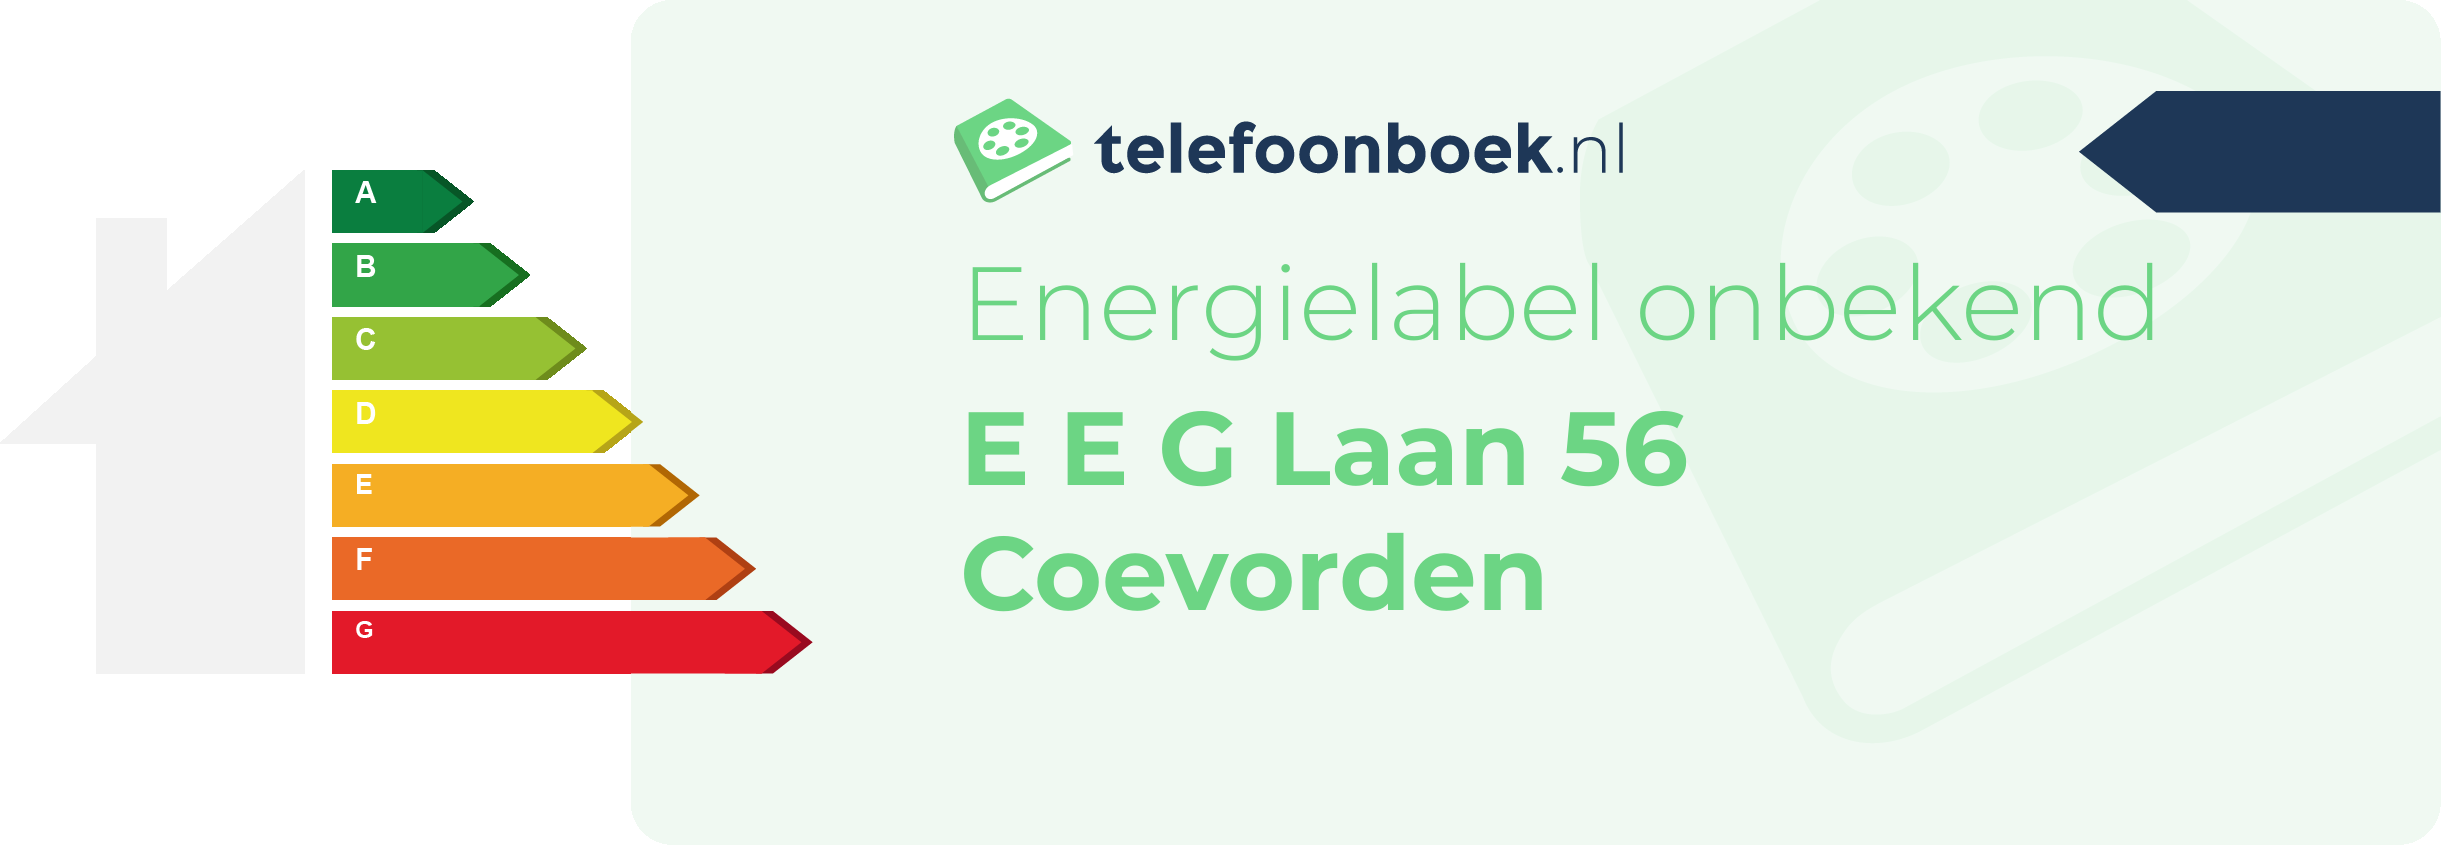 Energielabel E E G Laan 56 Coevorden